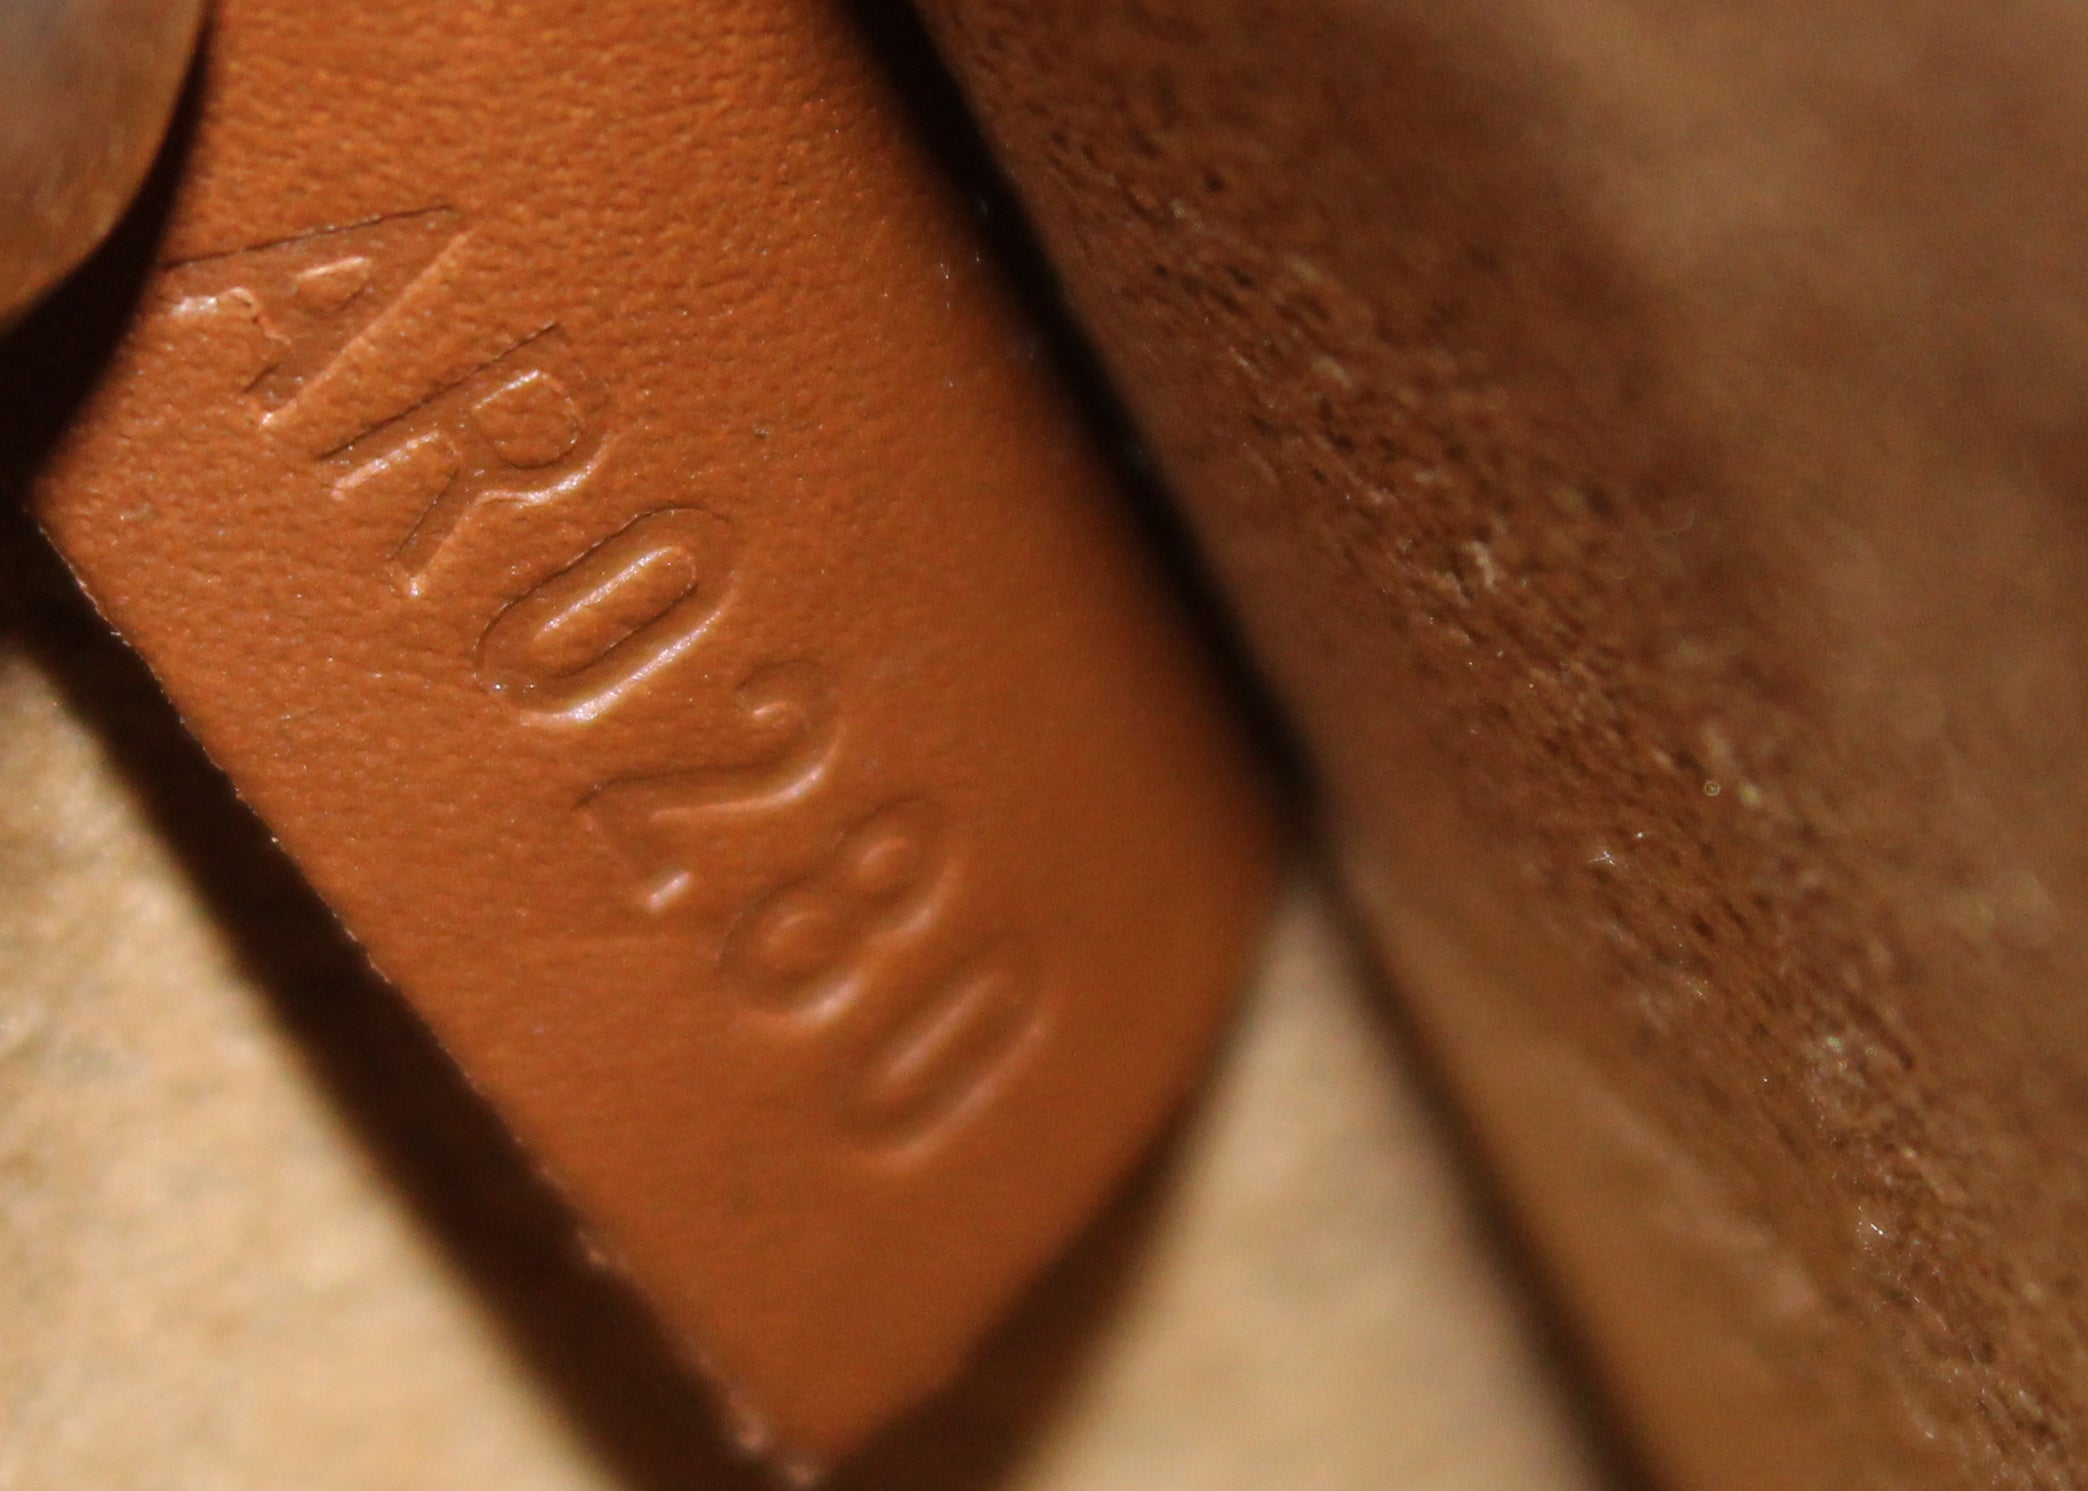 Louis Vuitton Monogram Marignan Sesame - Brown Handle Bags, Handbags -  LOU721210